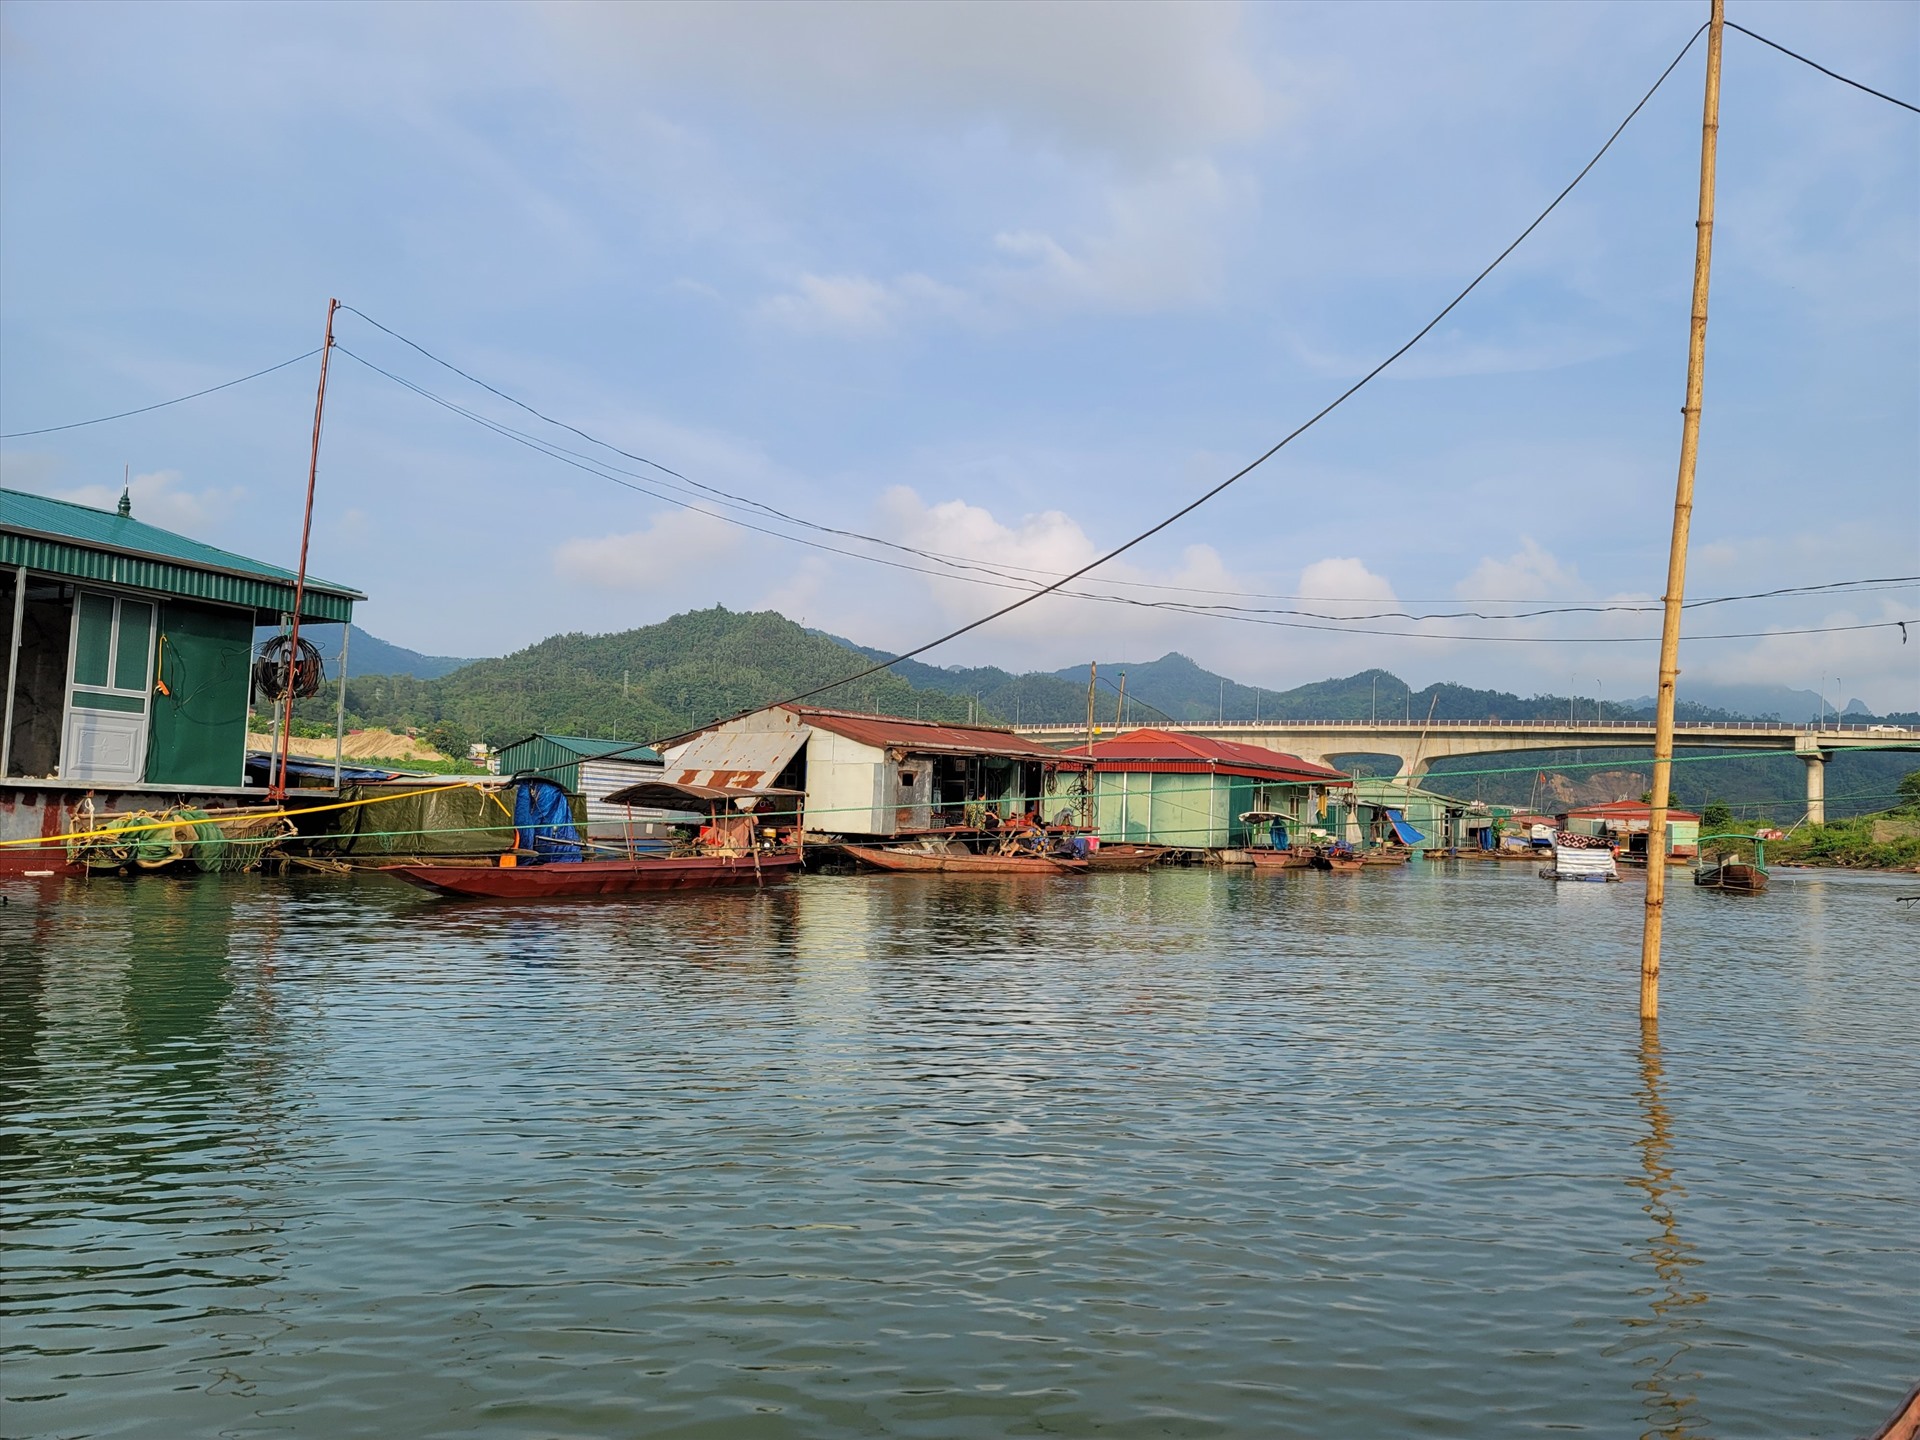 Làng vạn chài có 71 hộ dân sinh sống, chủ yếu bằng nghề đánh bắt cá trên sông Đà.